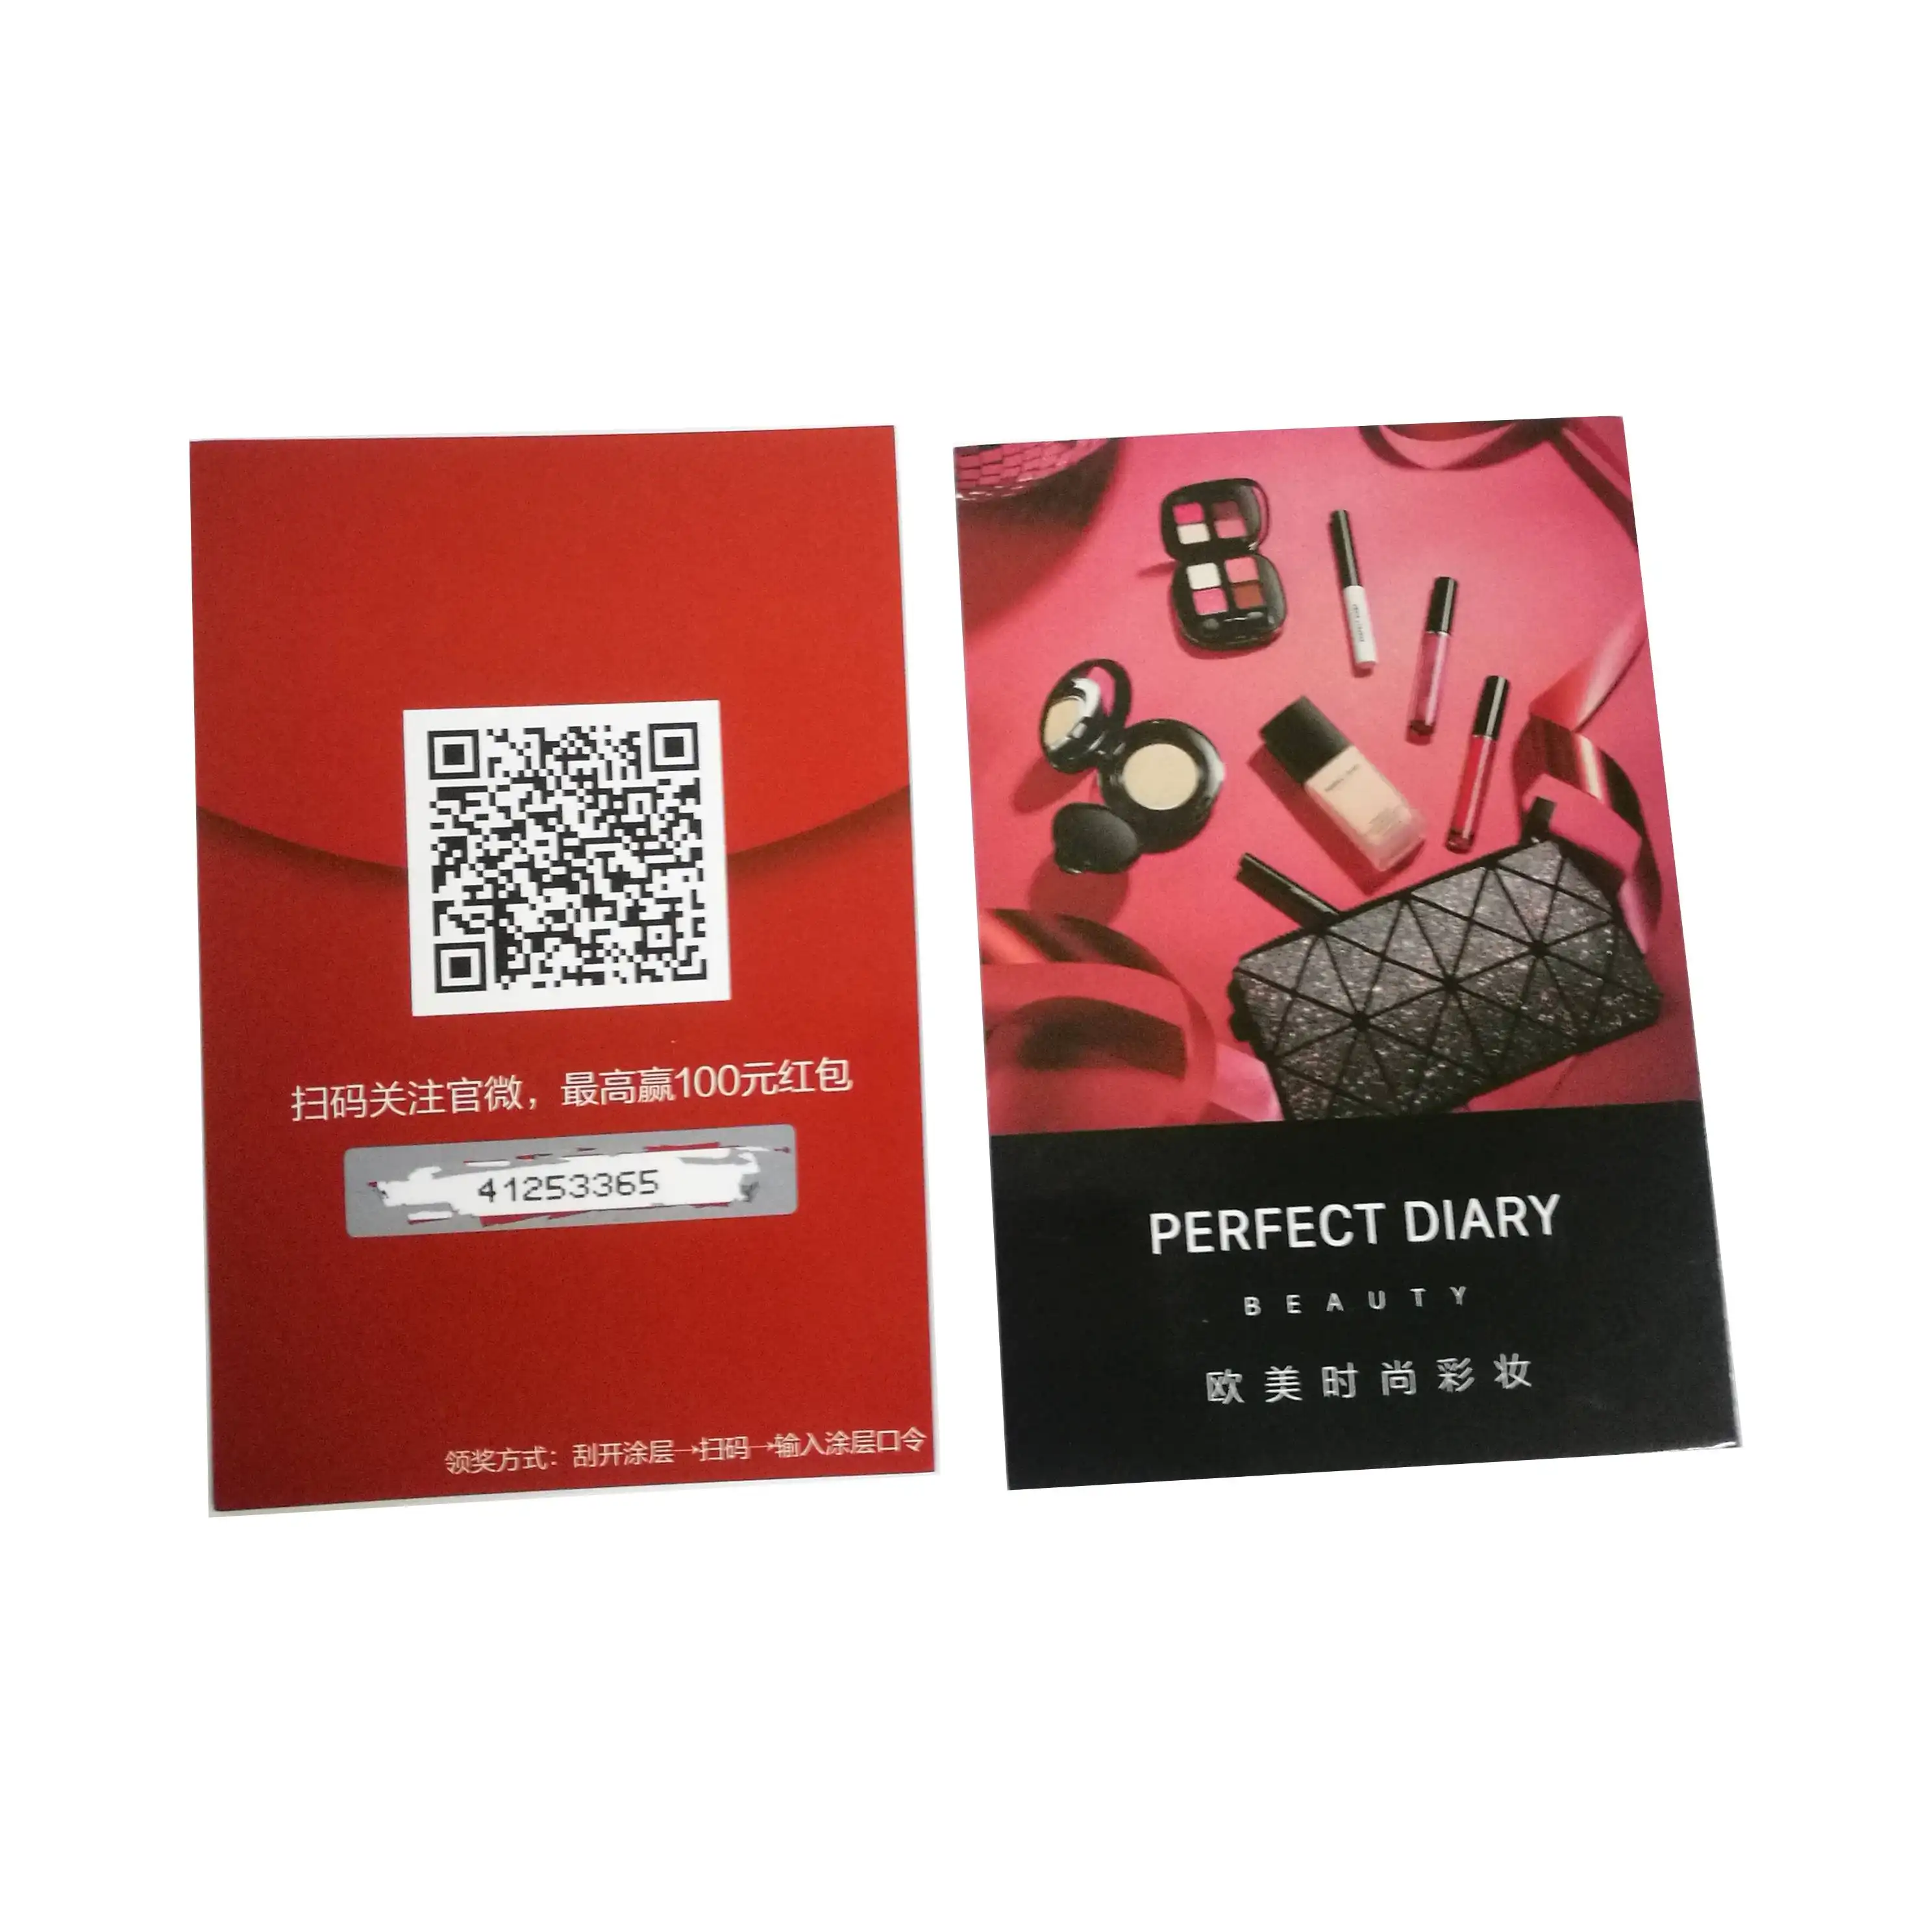 프로모션/마케팅을위한 시퀀스 코드가있는 럭키 게임/풀 탭 카드 맞춤형 고품질 스크래치